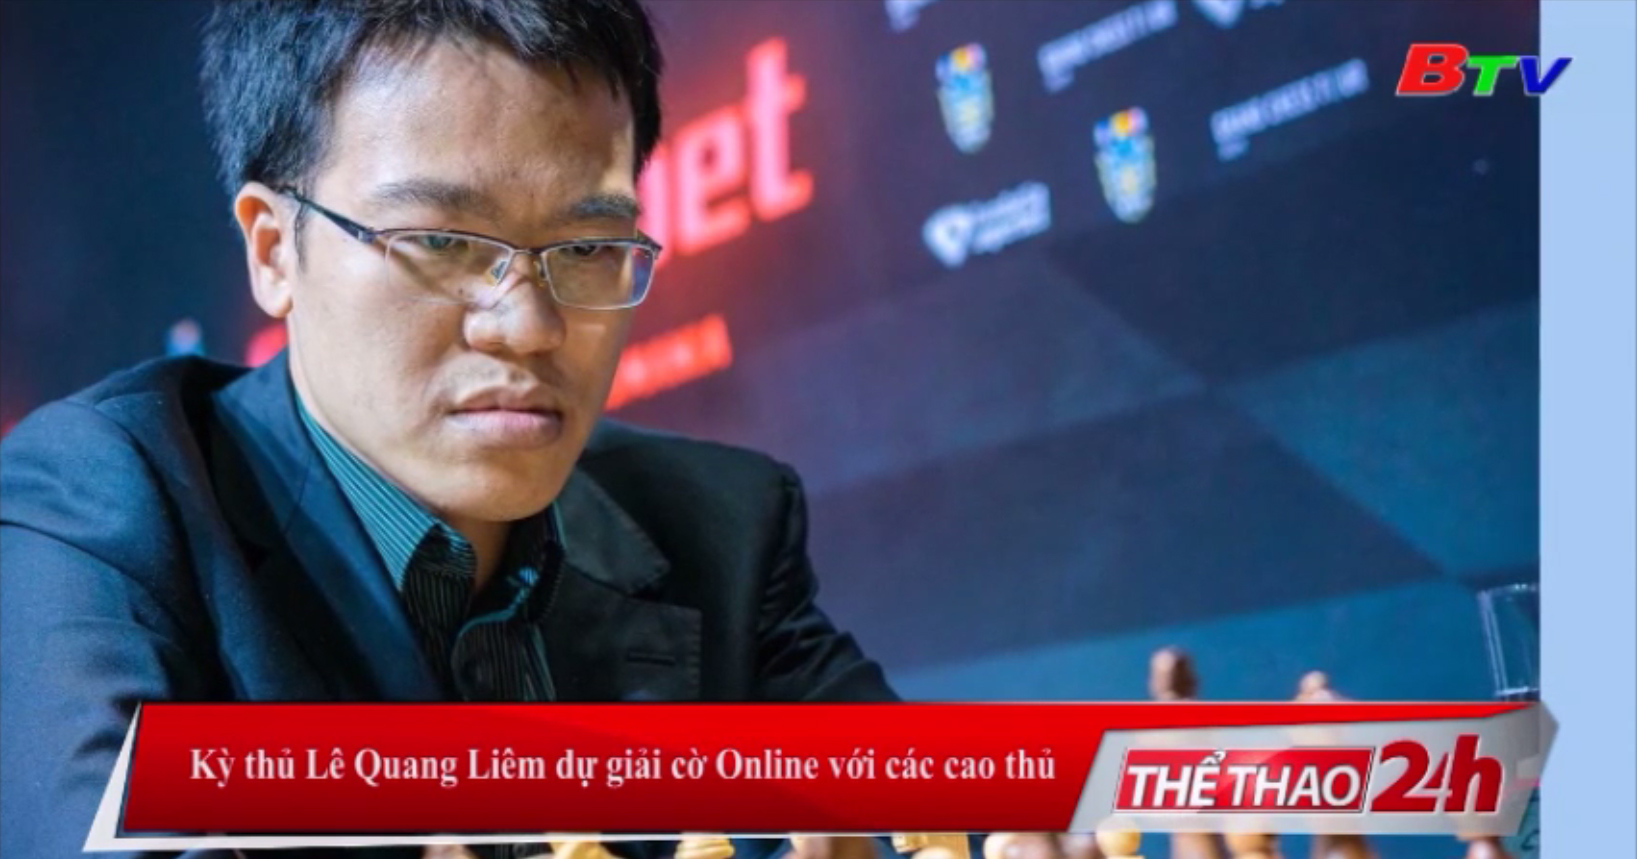 Kỳ thủ Lê Quang Liêm dự giải cờ Online với các cao thủ